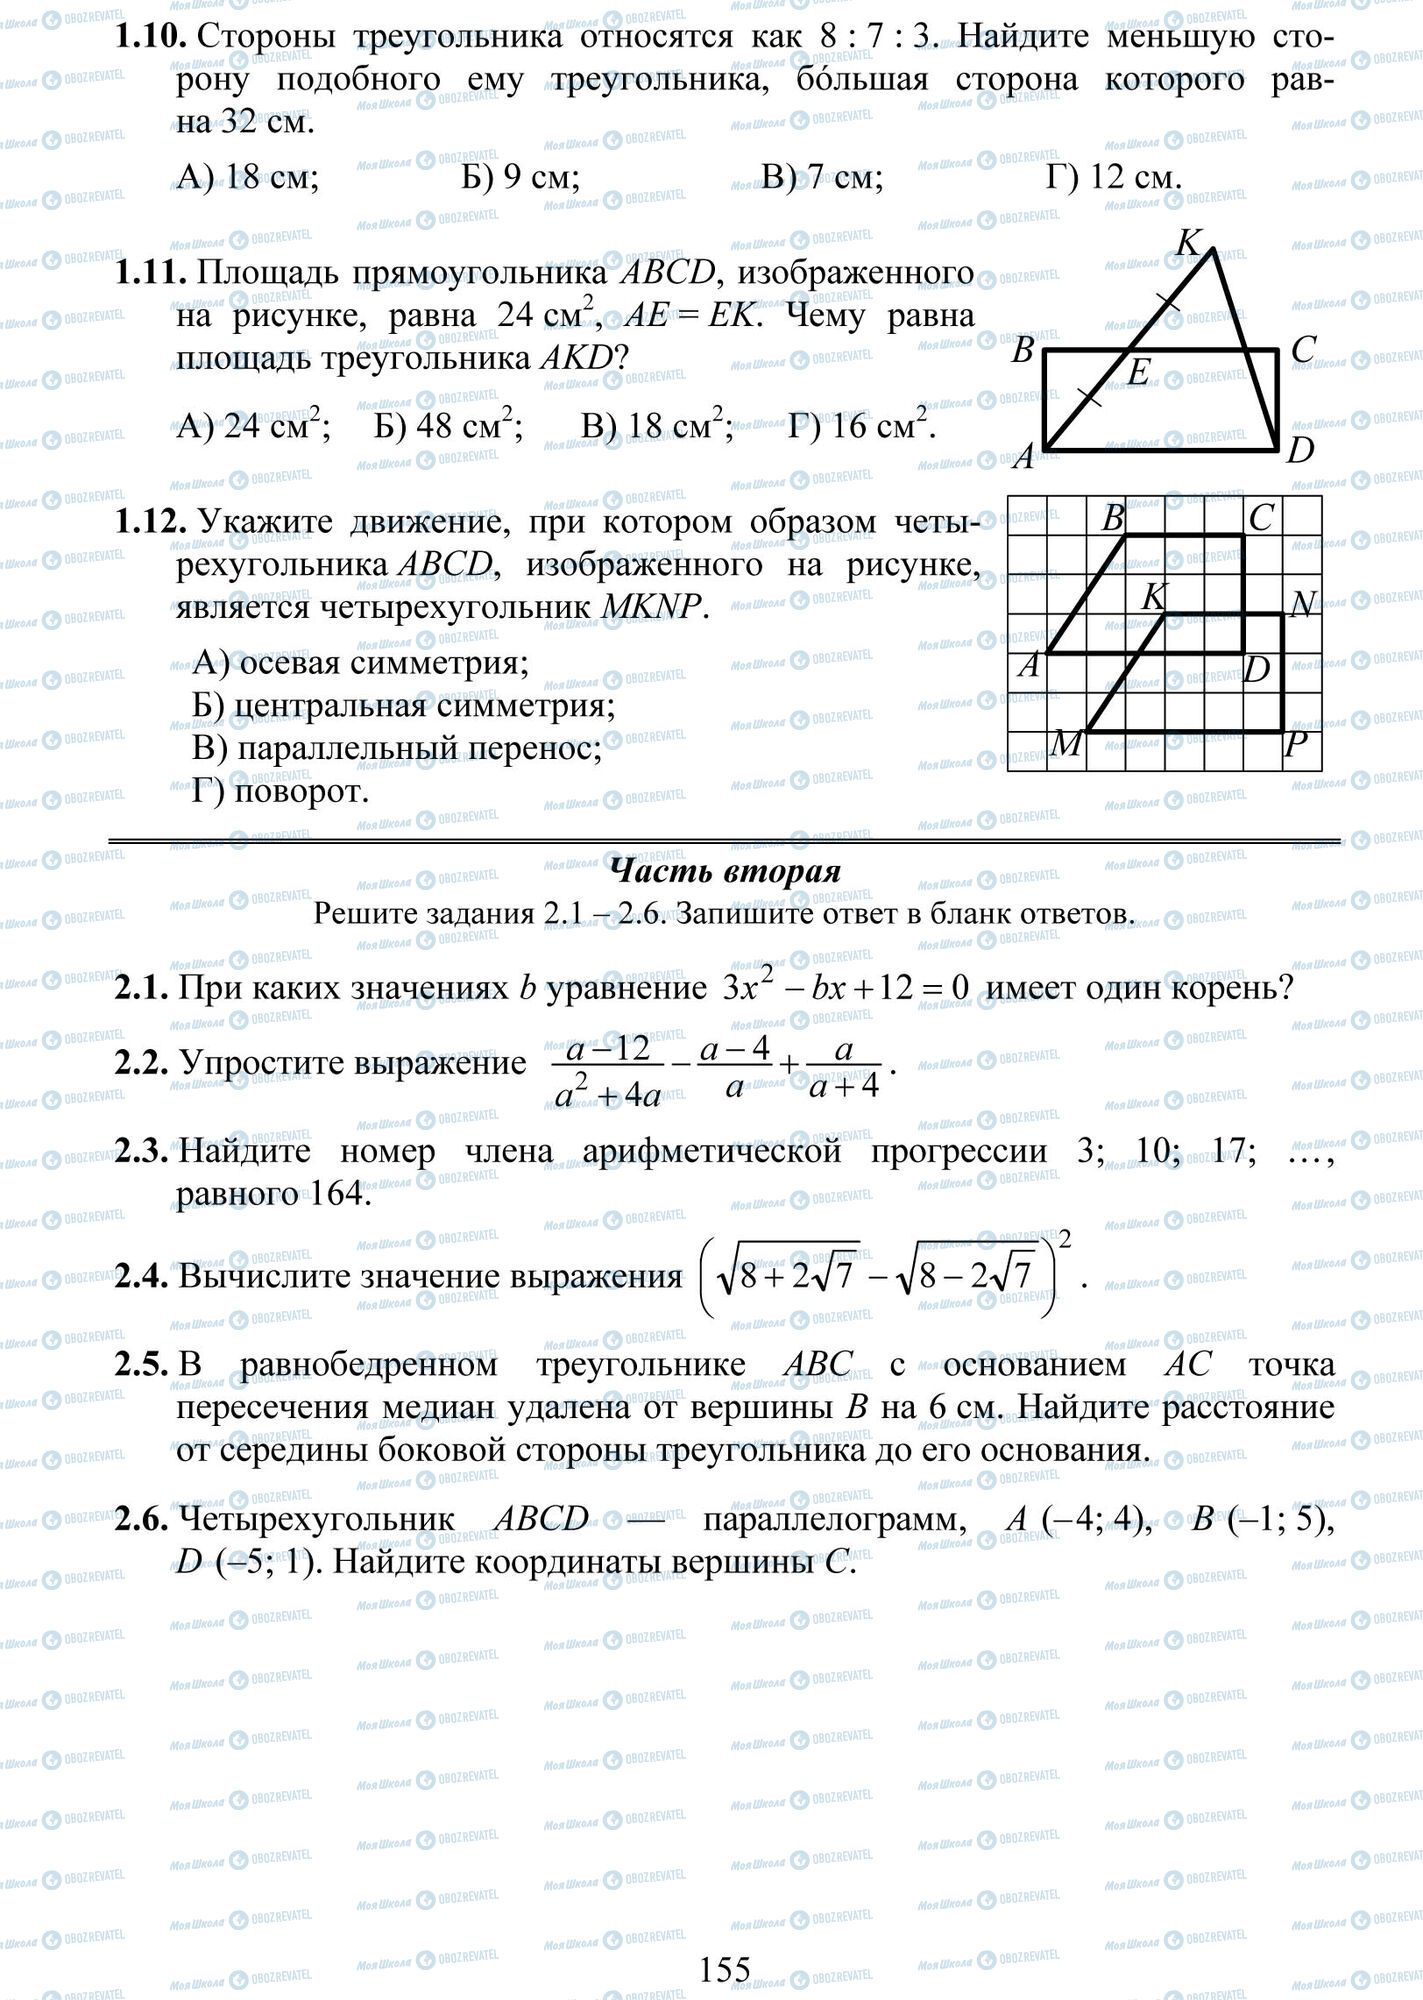 ДПА Математика 9 класс страница 10-12